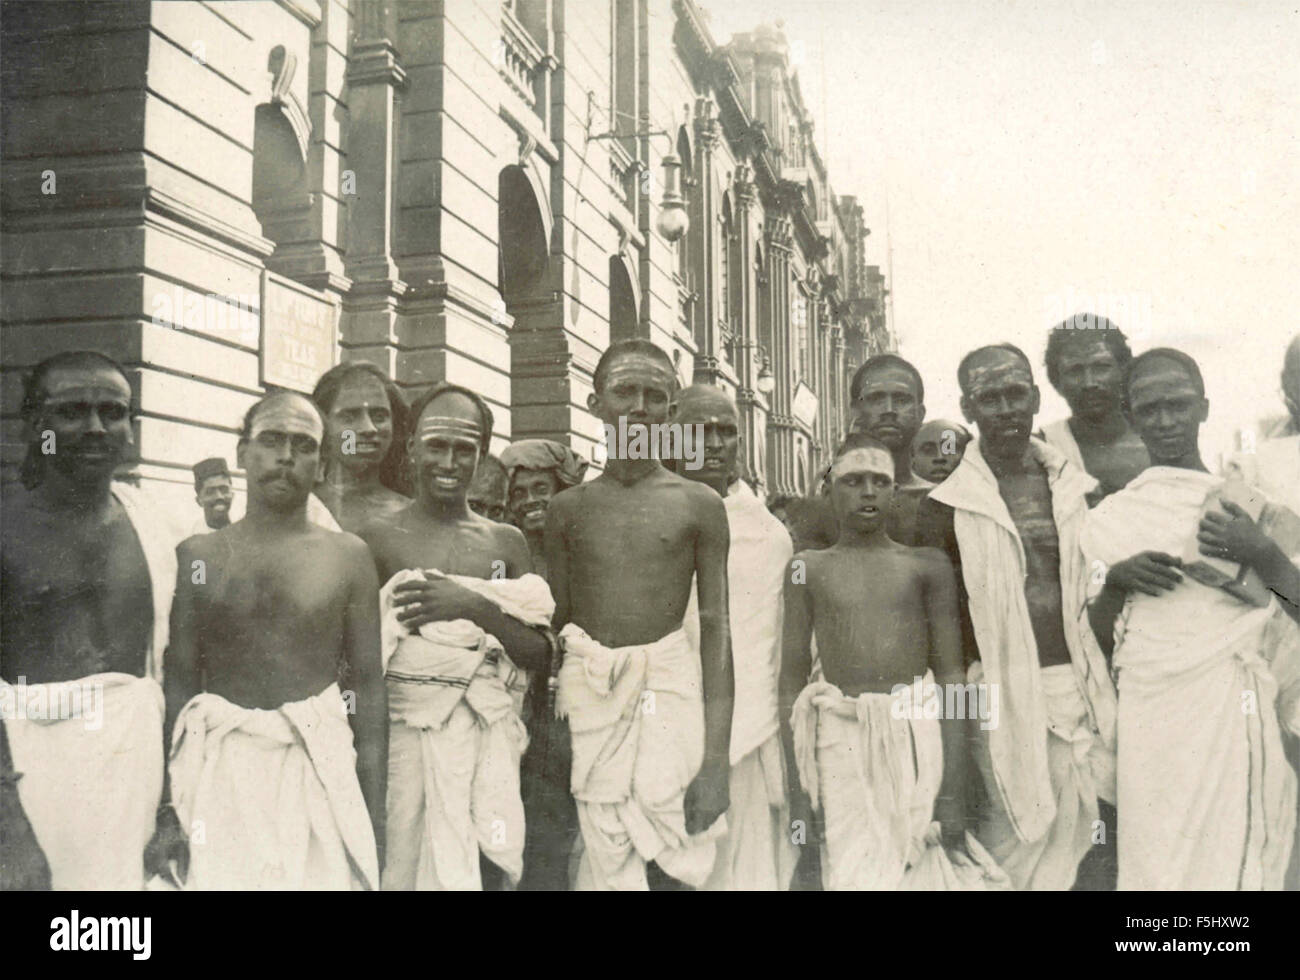 Gruppe der Indianer gekleidet in weißen Turbanen, Indien Stockfoto